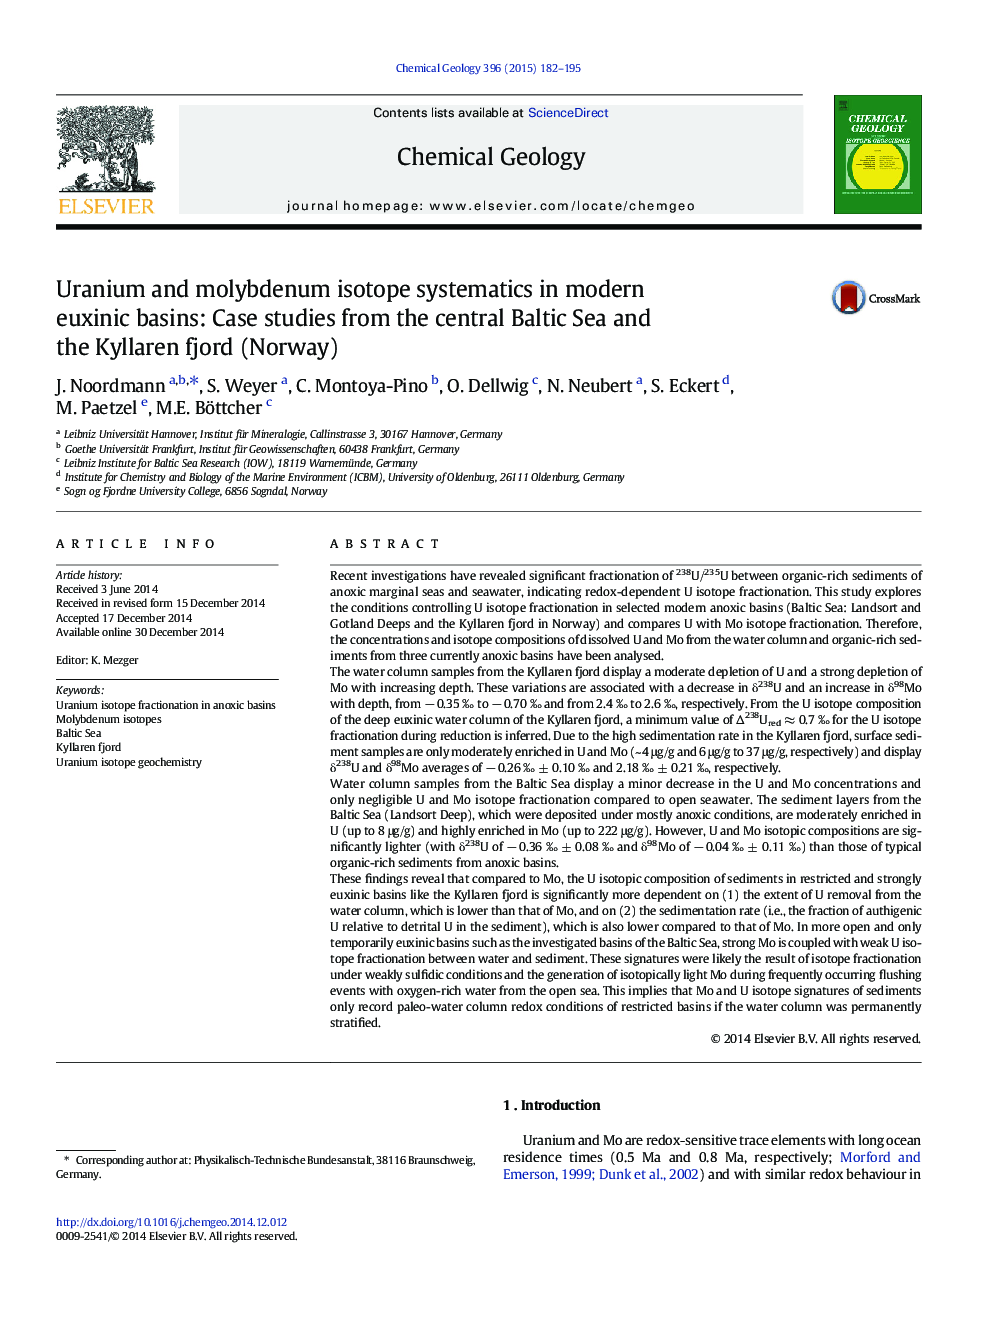 سیستماتیک ایزوتوپهای اورانیم و مولیبدن در حوضه های مدرن اکسینیک: مطالعات موردی از دریای مرکزی دریای بالتیک و فیرورد کیلرن (نروژ) 